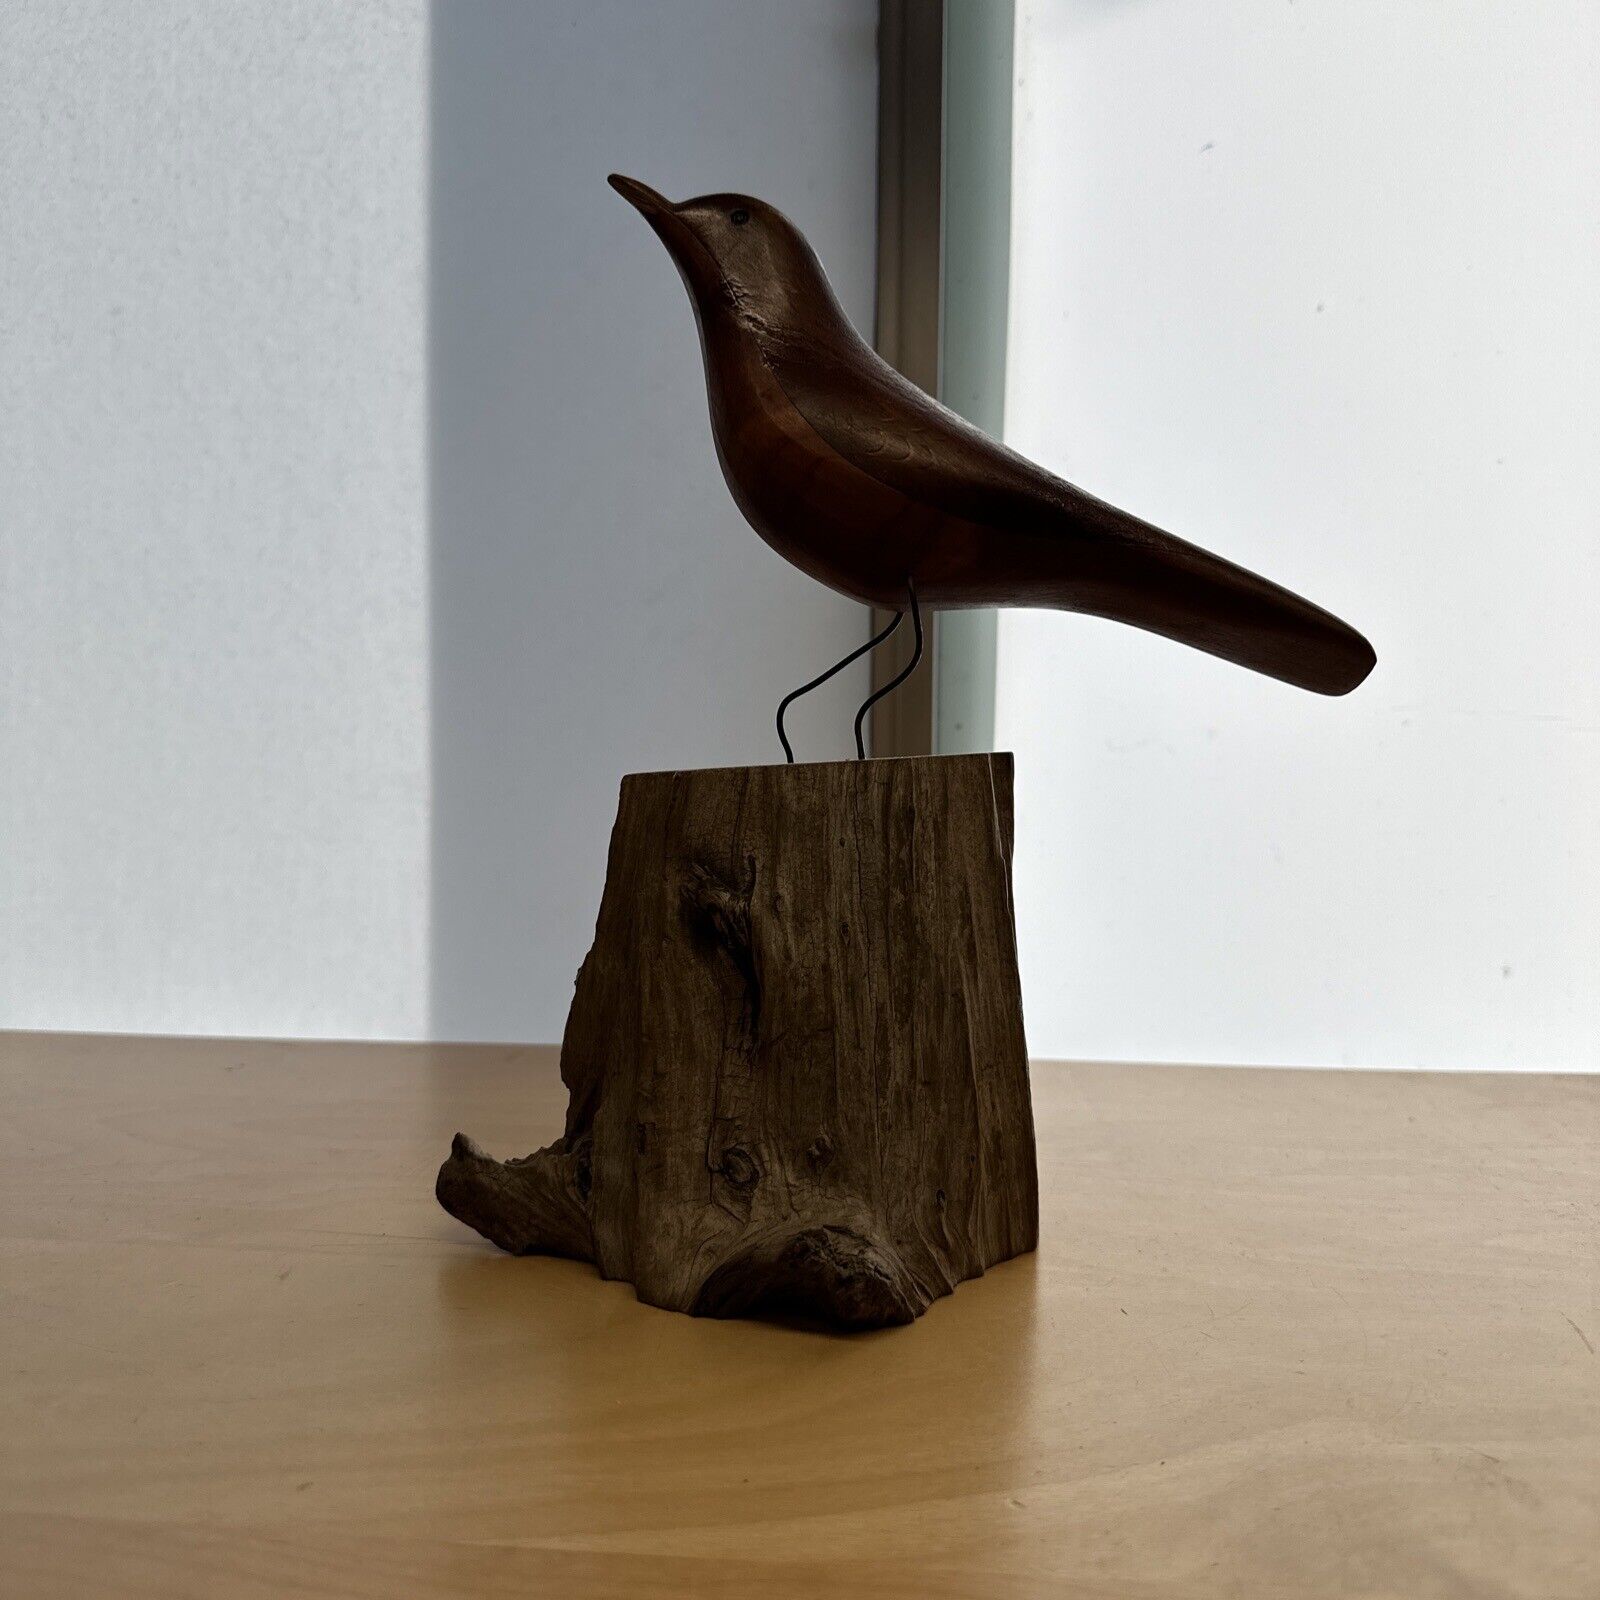 Vtg 1989 Randy Whaley Hand Carved Robin Bird Wood Sculpture Folk Art Driftwood